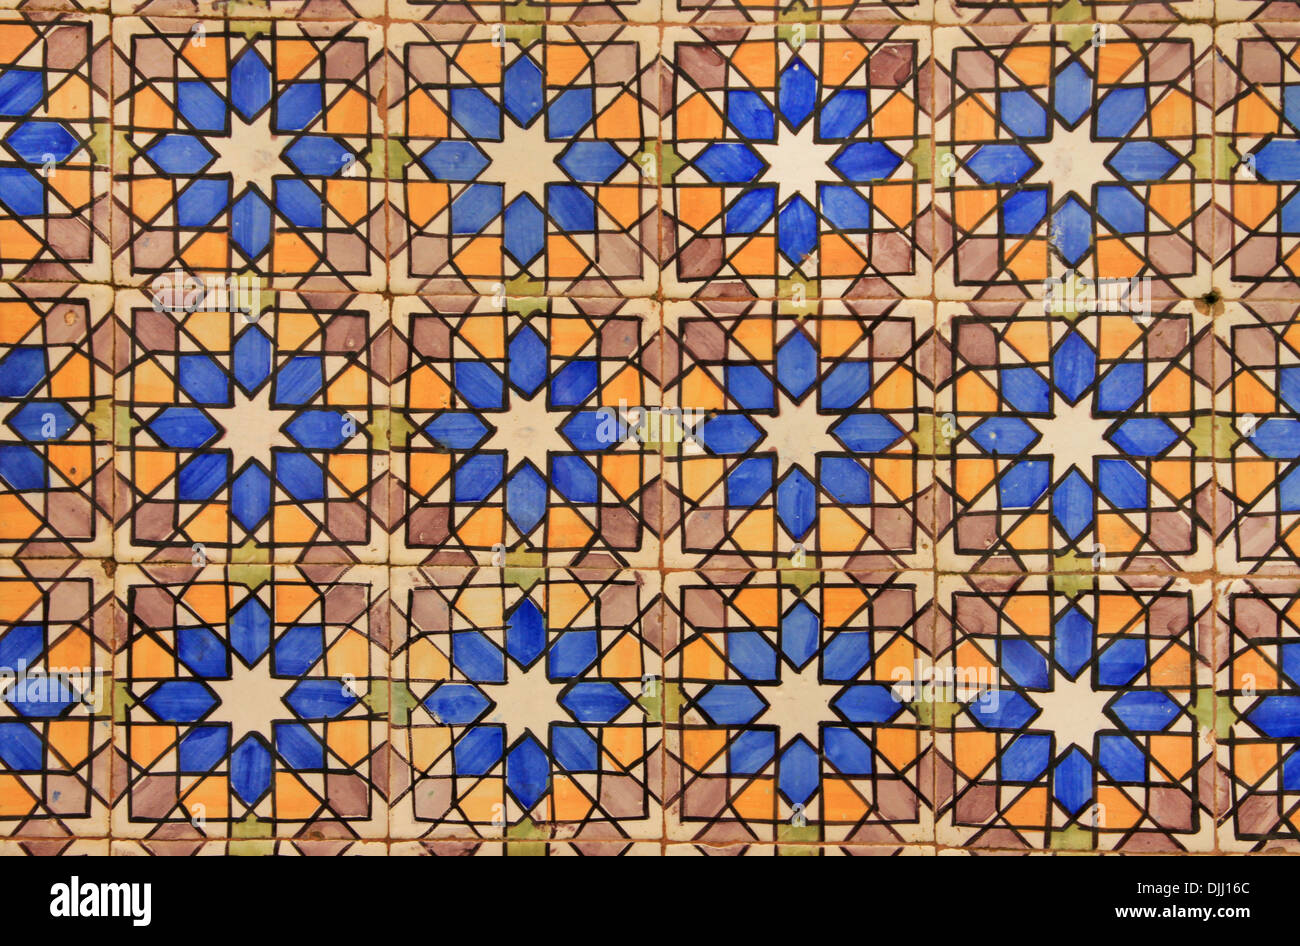 Azulejo (porcelan tile). Portugal. Stock Photo